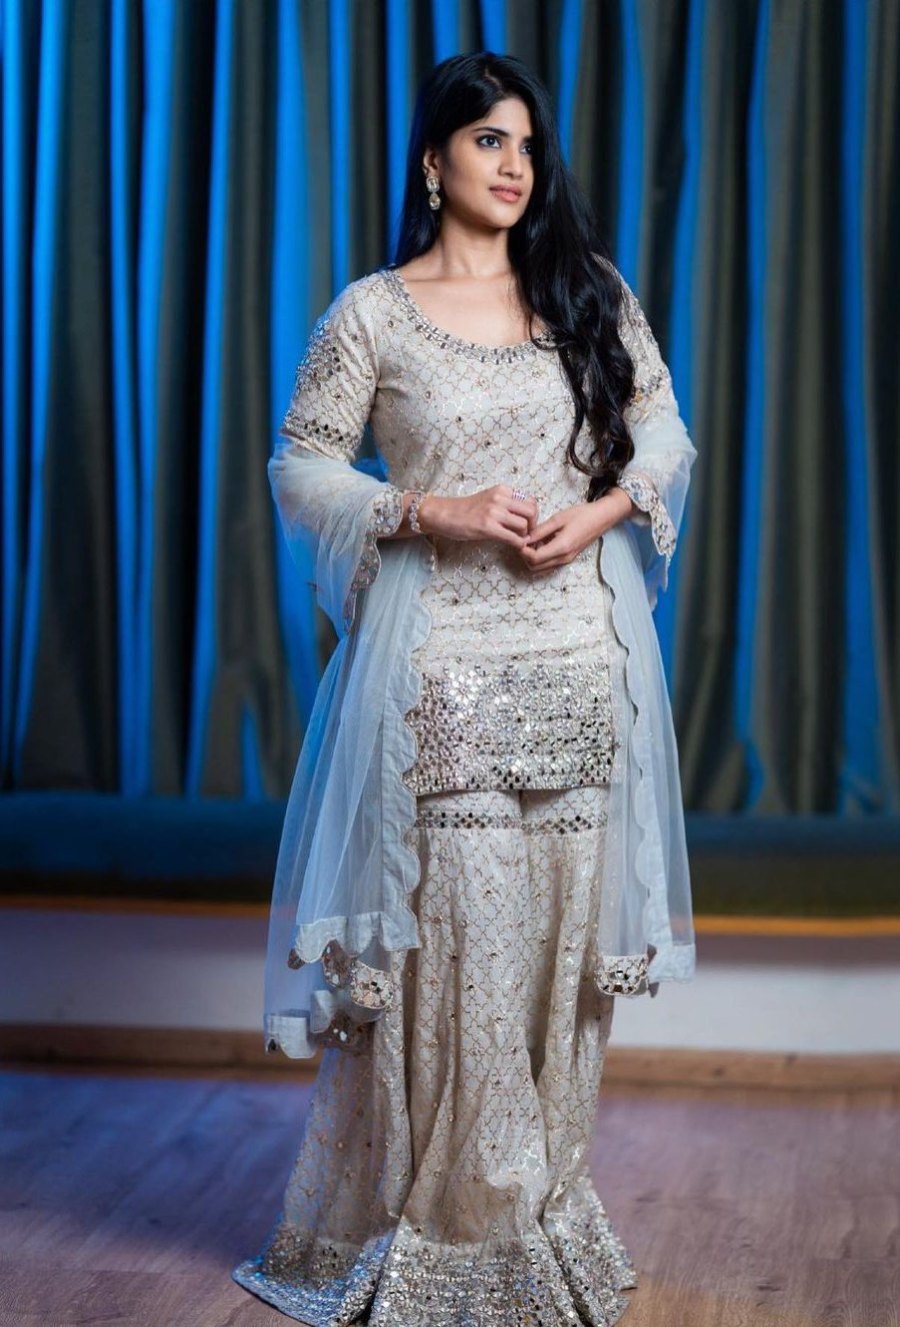 Stunning Megha Akash